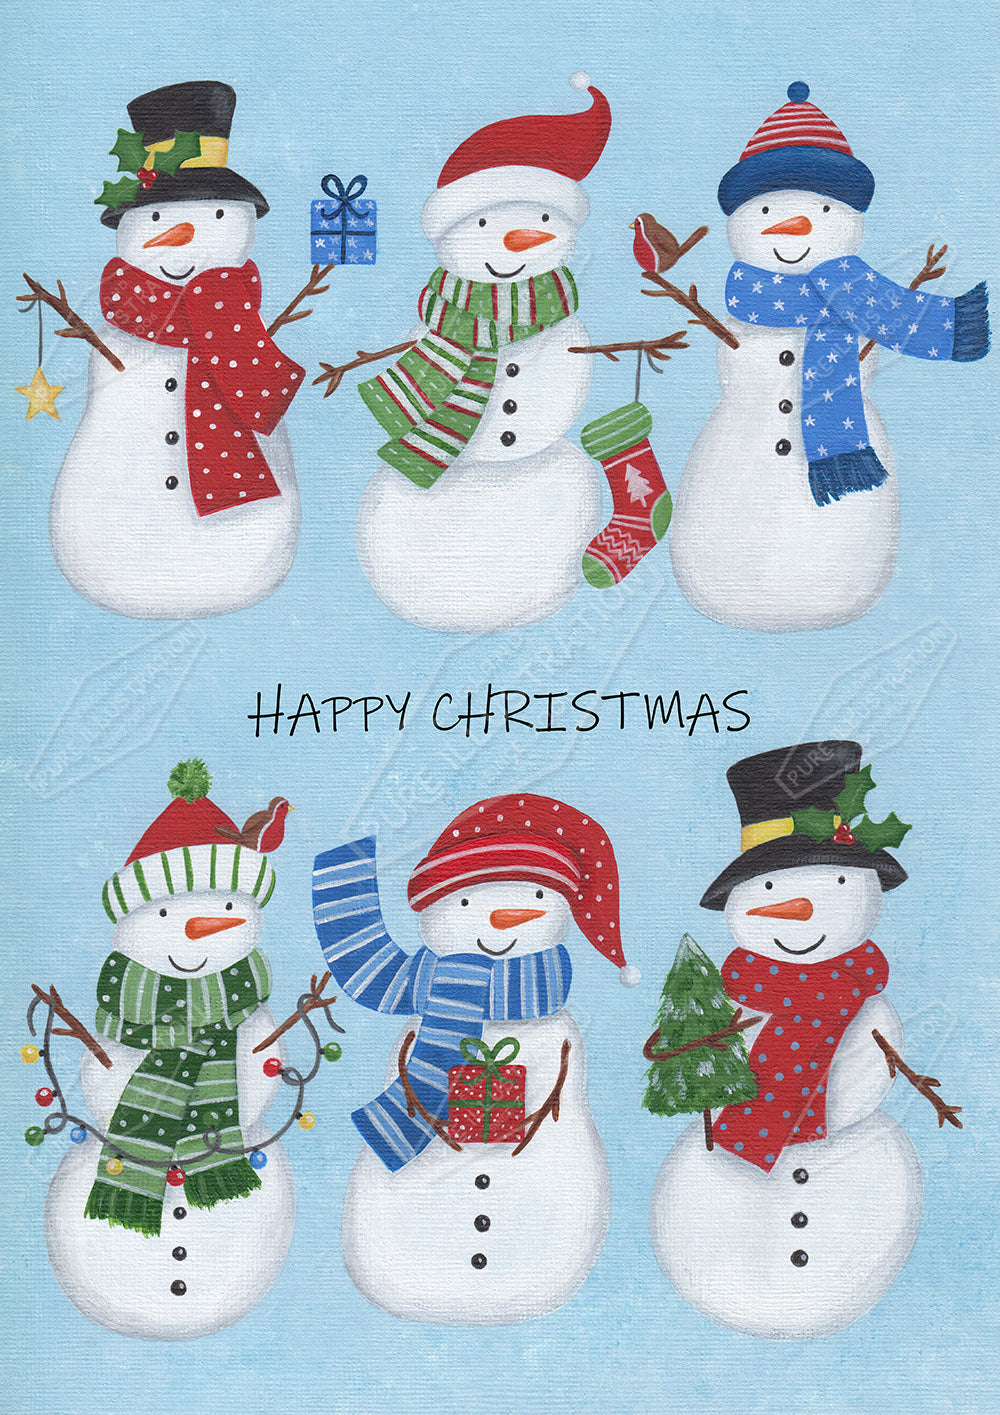 00034069AAI - Snowmen Greeting Card Design - Pure Art Licensing Agency